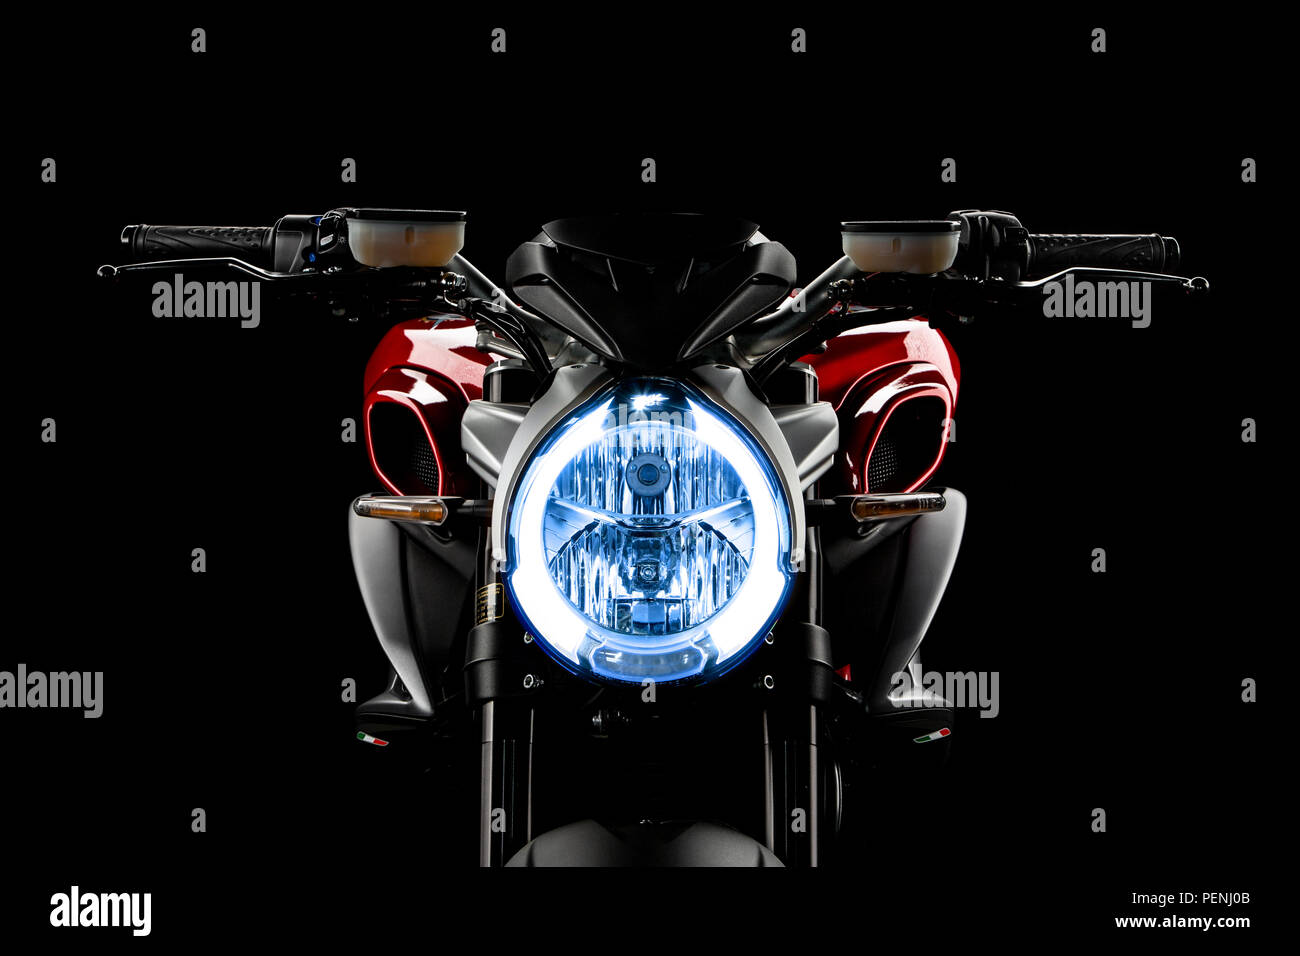 Studio image d'un 2018 MV AGUSTA BRUTALE 910 moto sur un fond noir. Banque D'Images